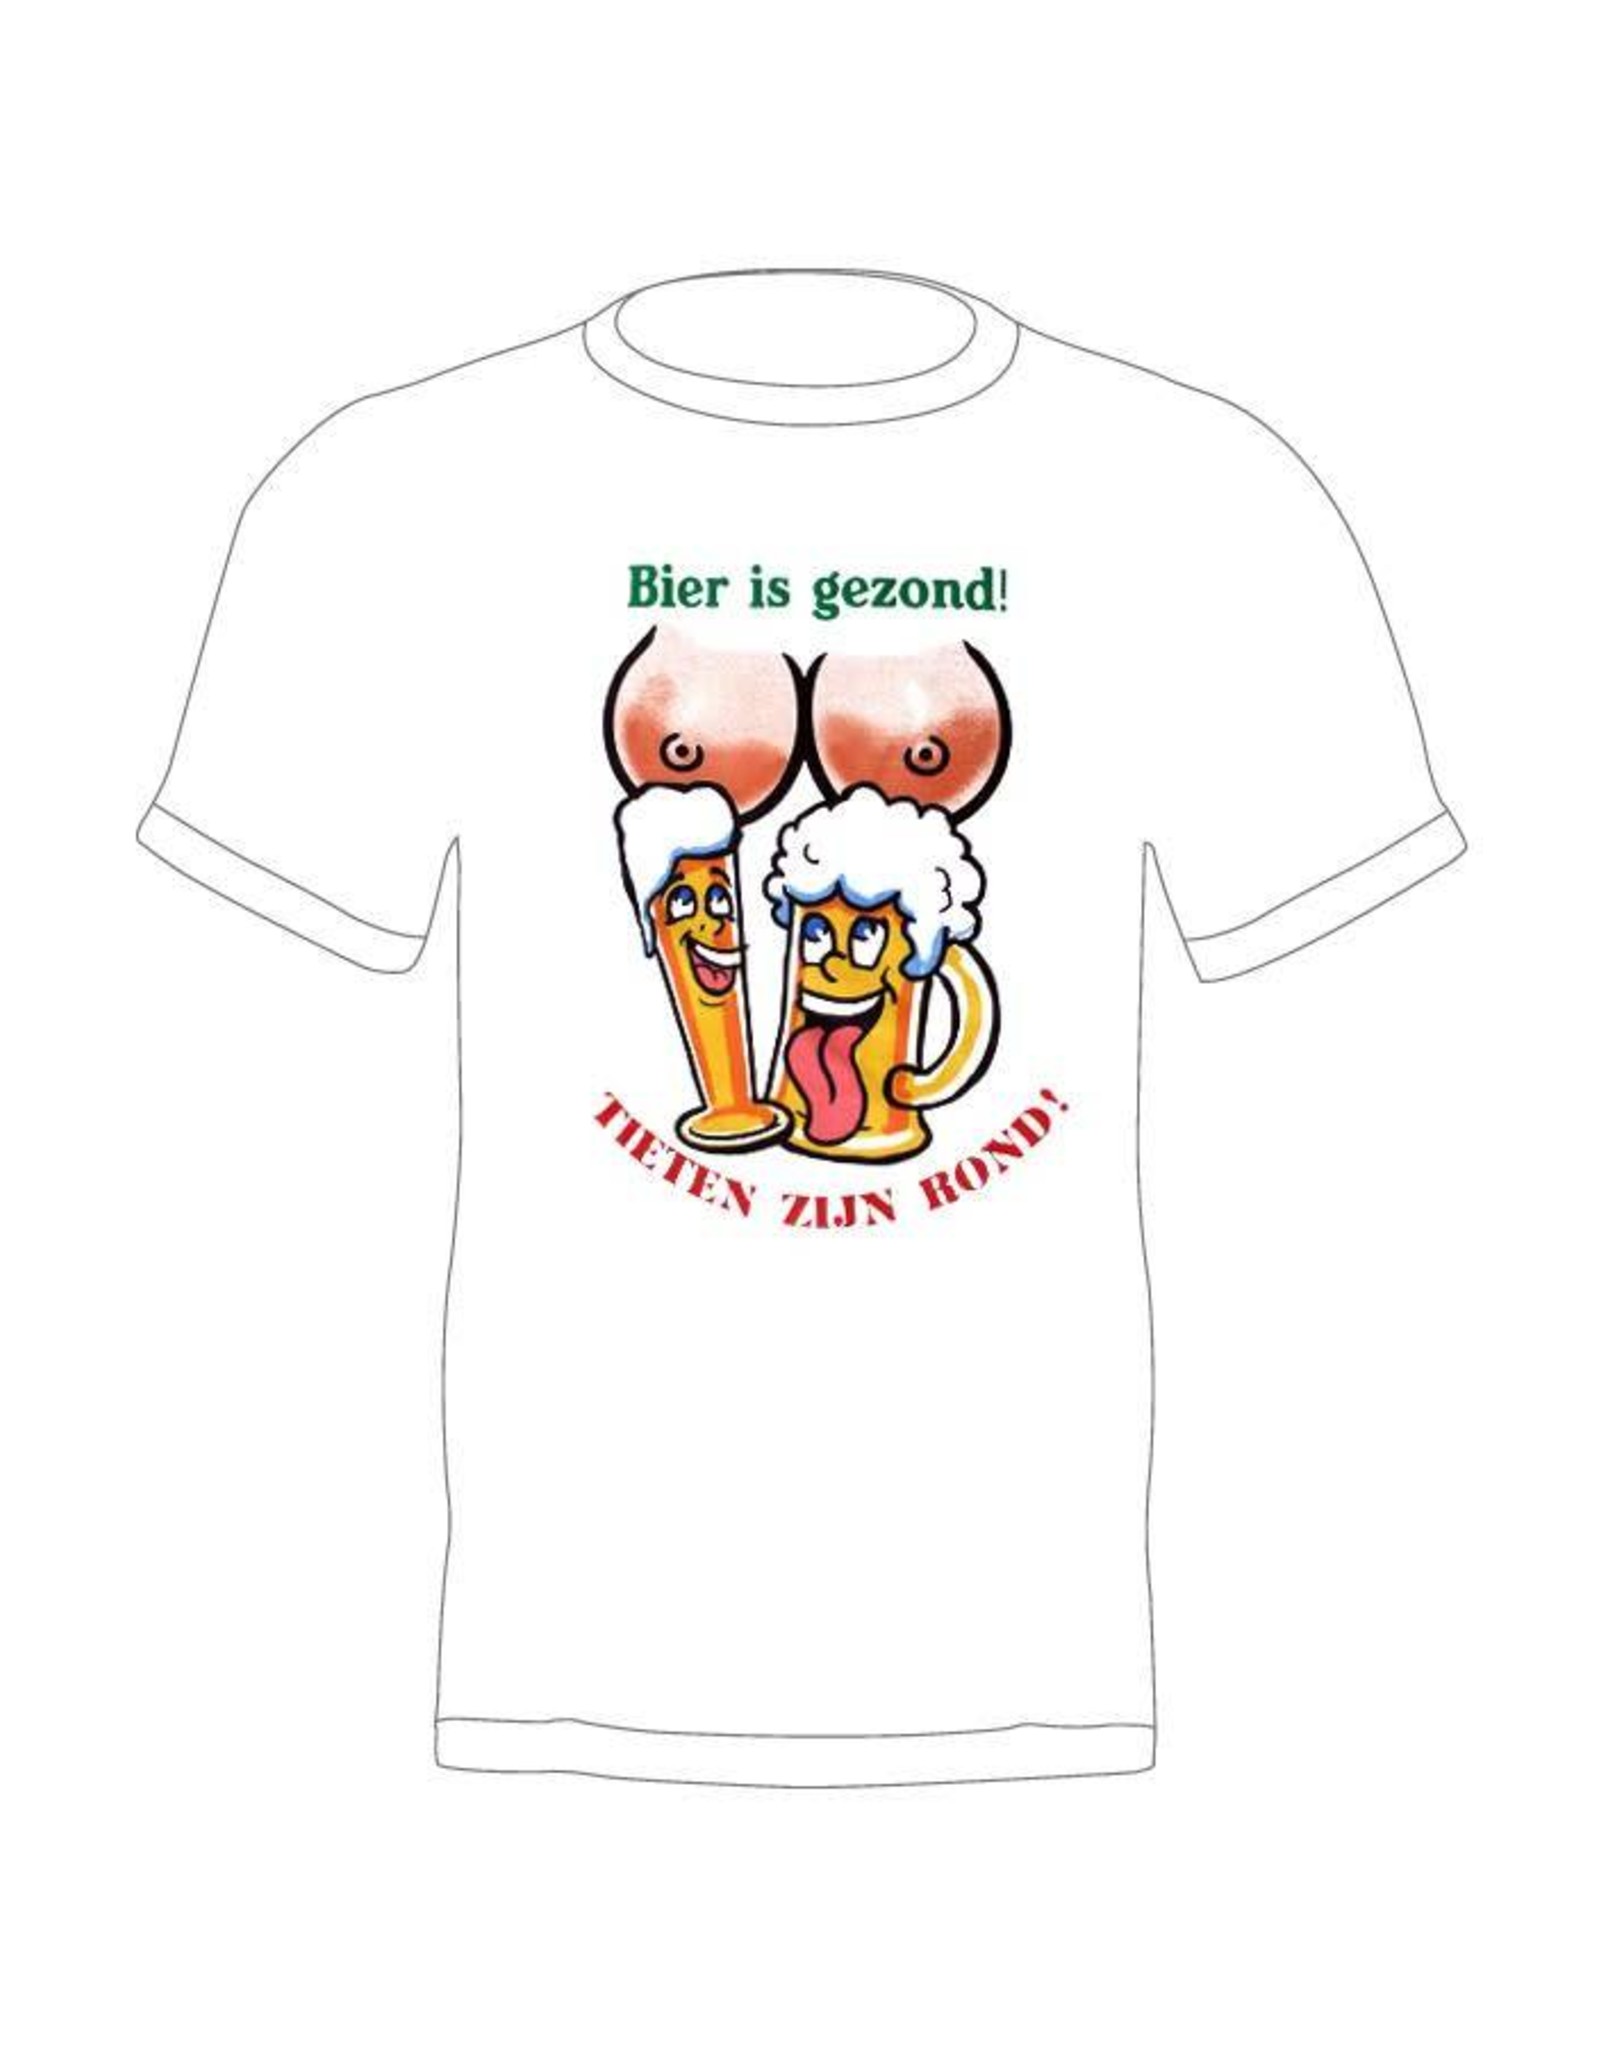 T-shirt 'Bier is gezond en tieten zijn rond'